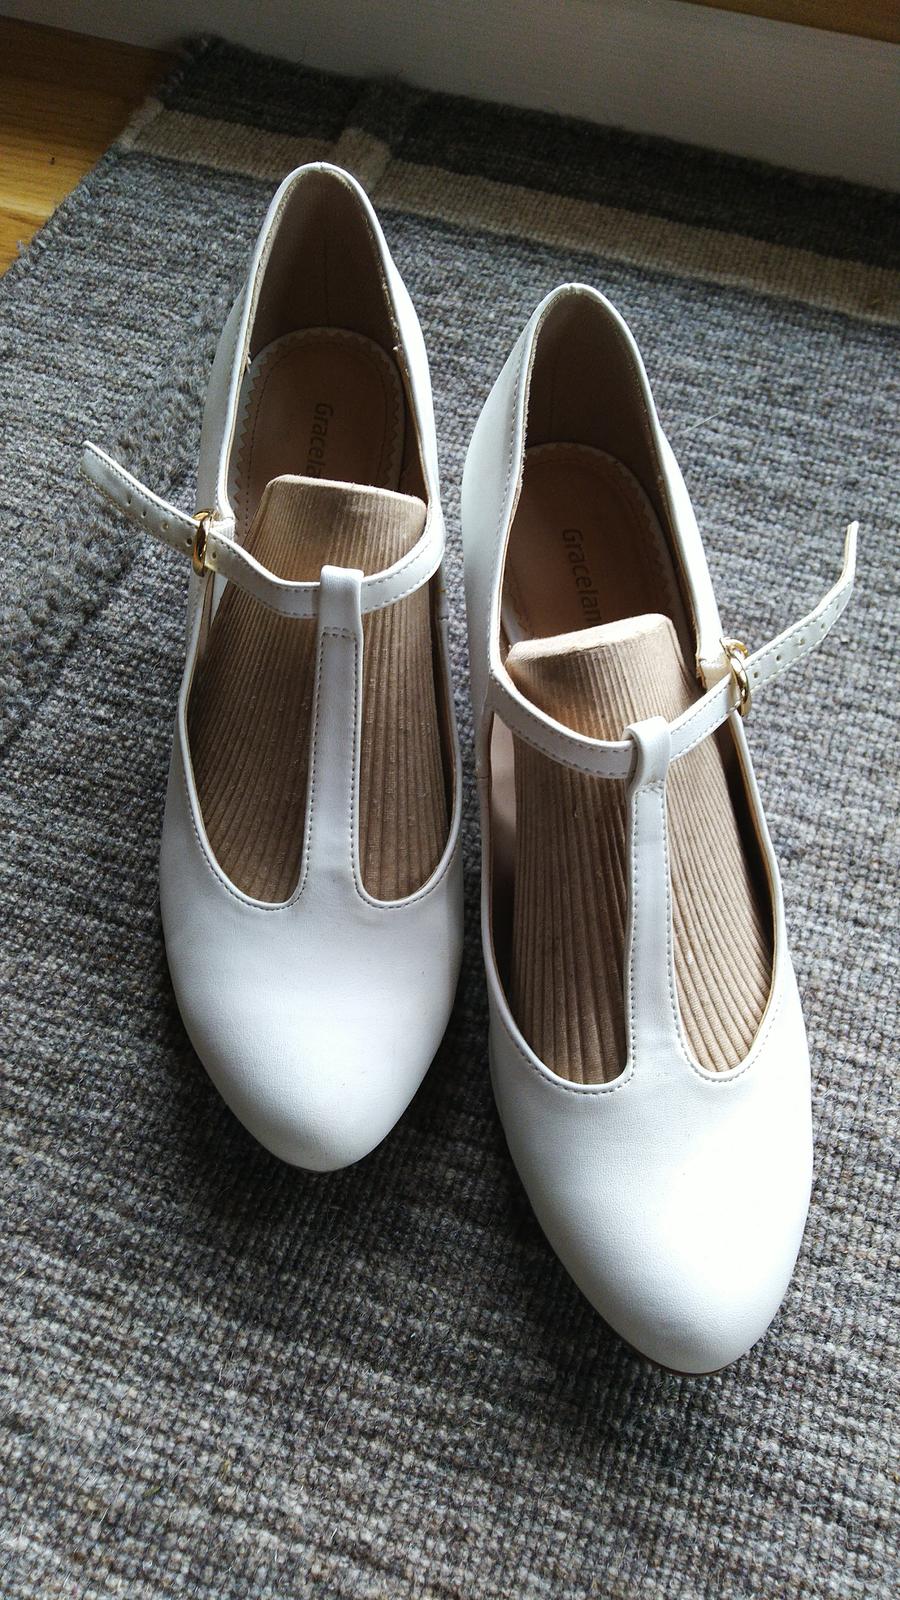 Graceland boty s řemínkem - Obrázek č. 1